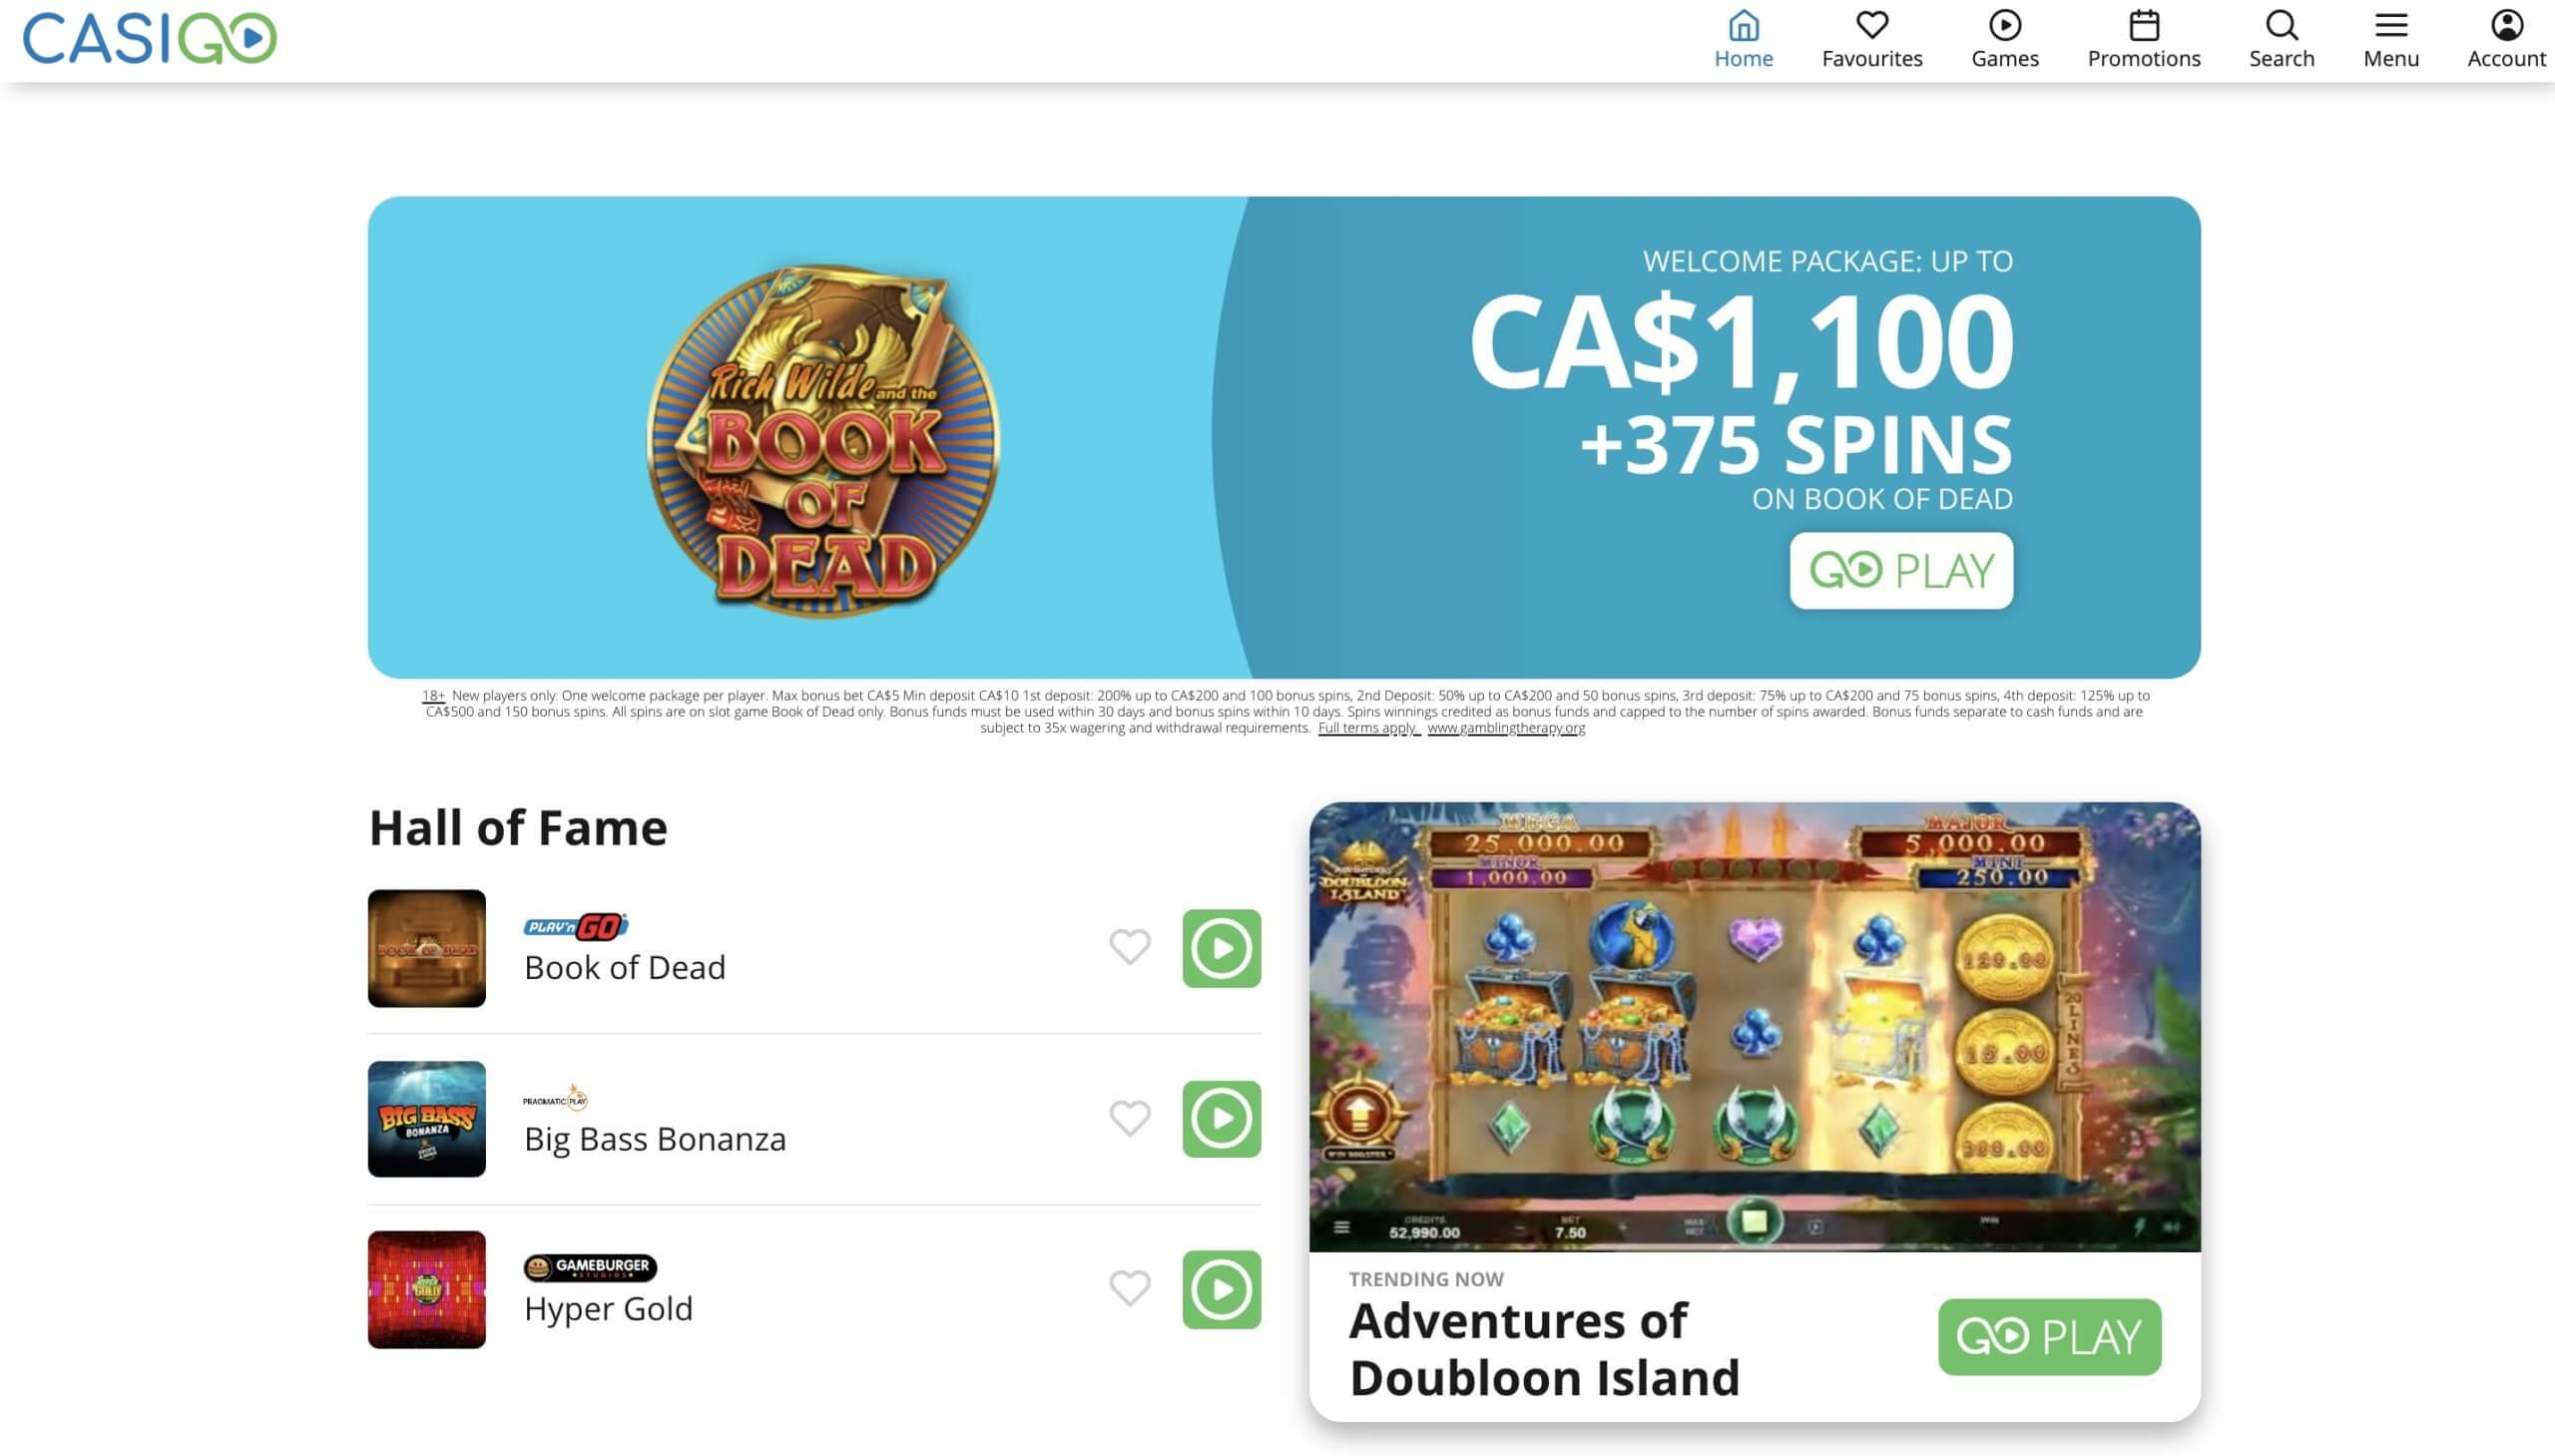 CasiGO Casino Review Bonus